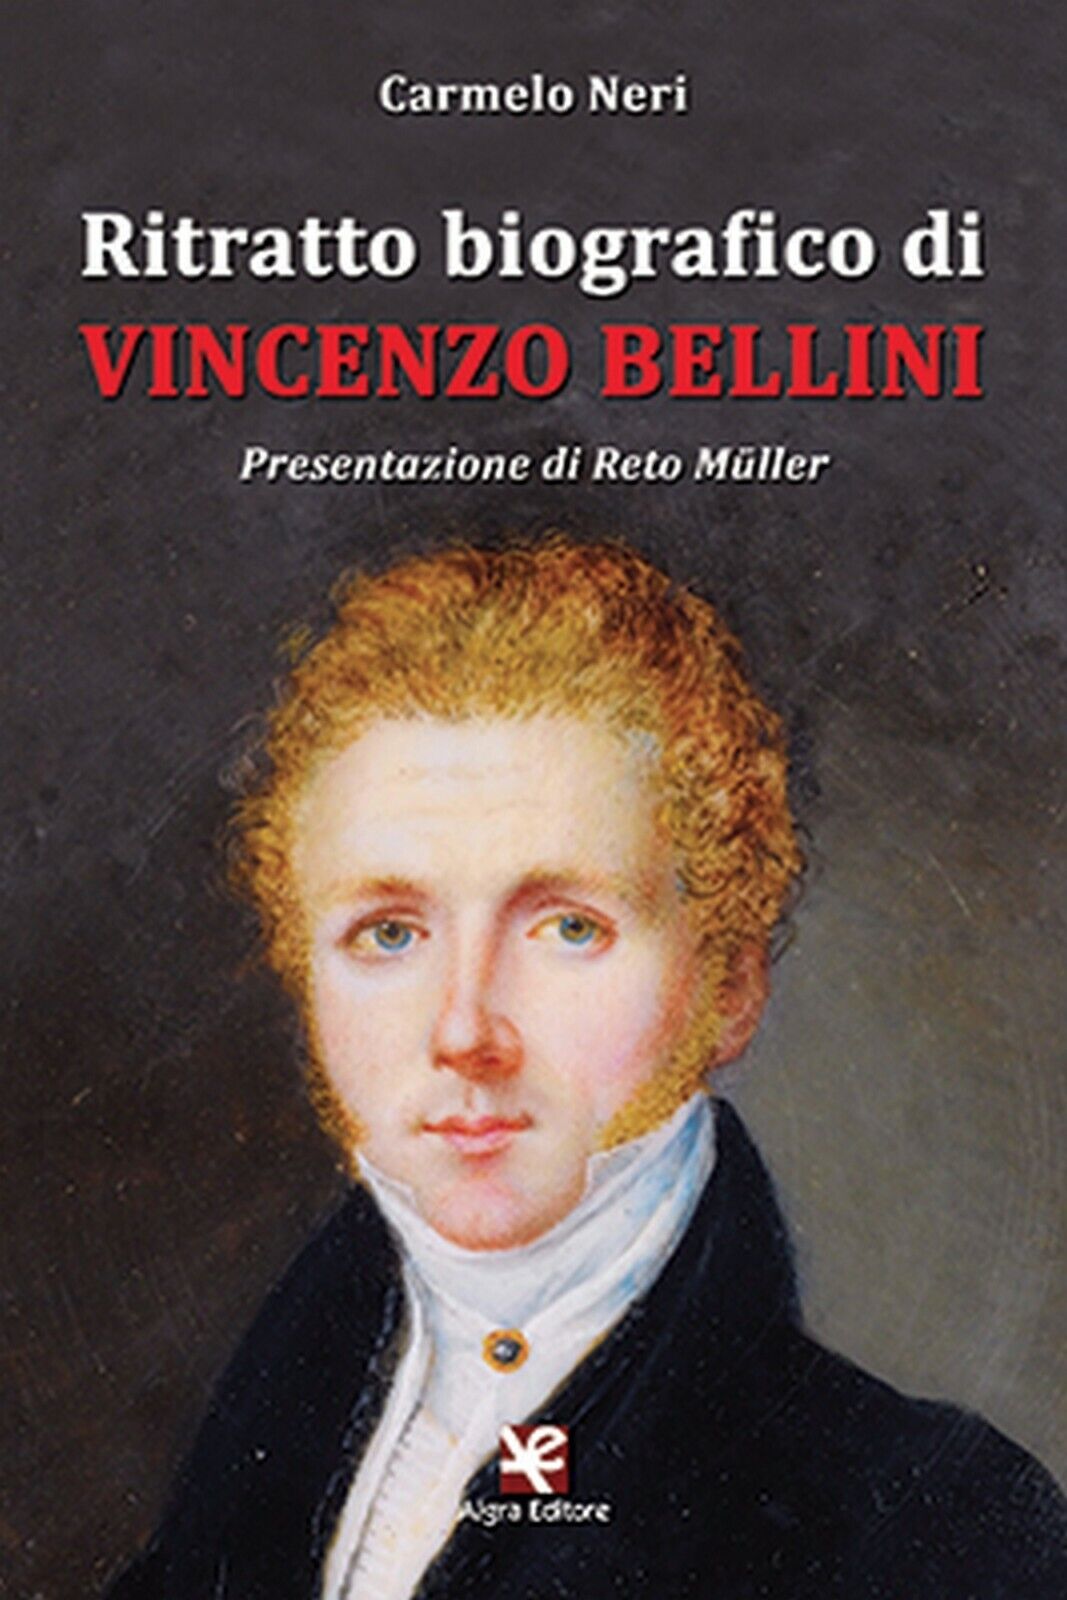 Ritratto biografico di Vincenzo Bellini  di Carmelo Neri,  Algra Editore